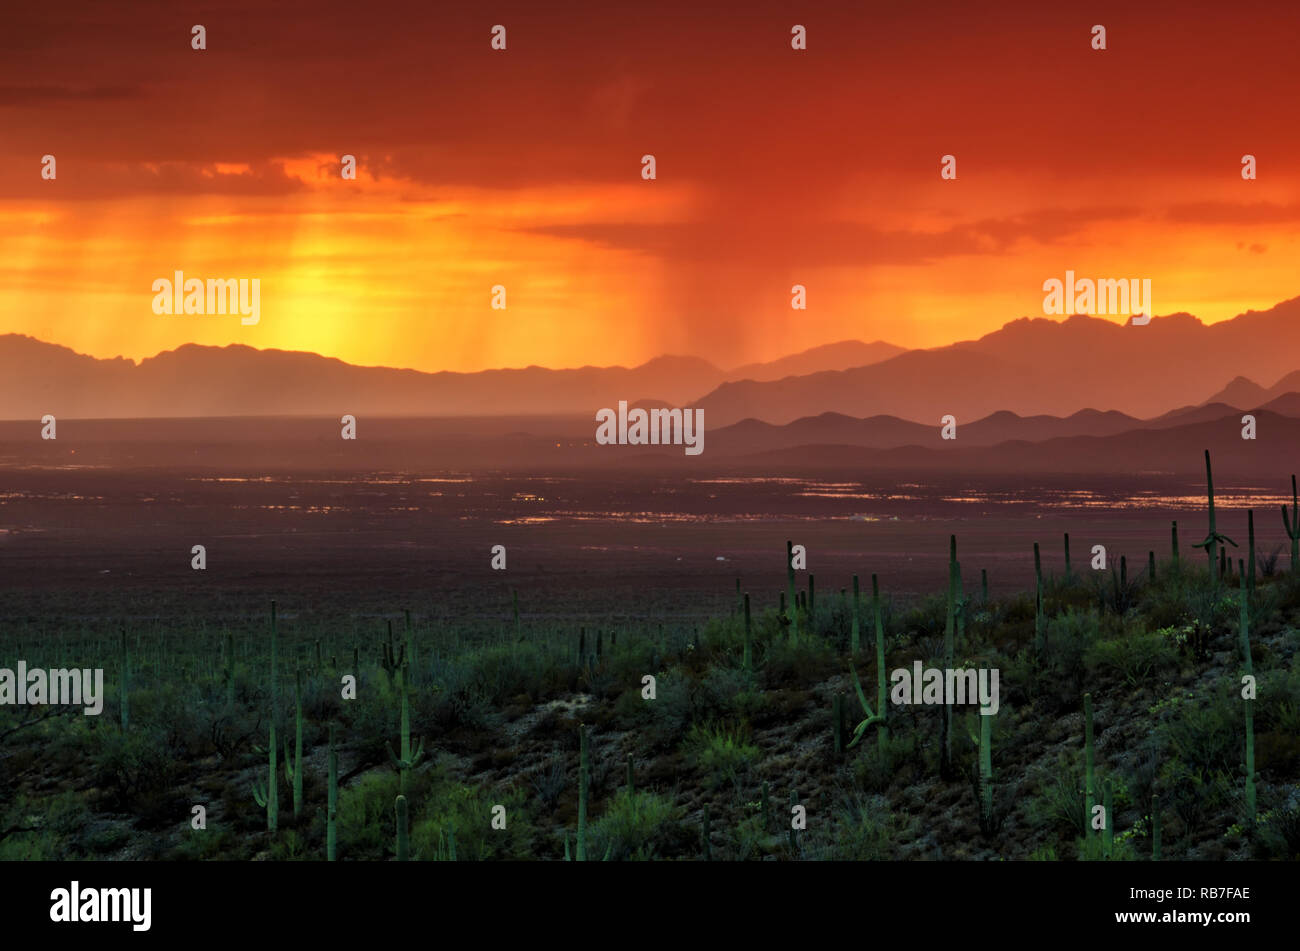 Arizona Sunset over Avra Valley during Summer Monsoon Season Stock Photo